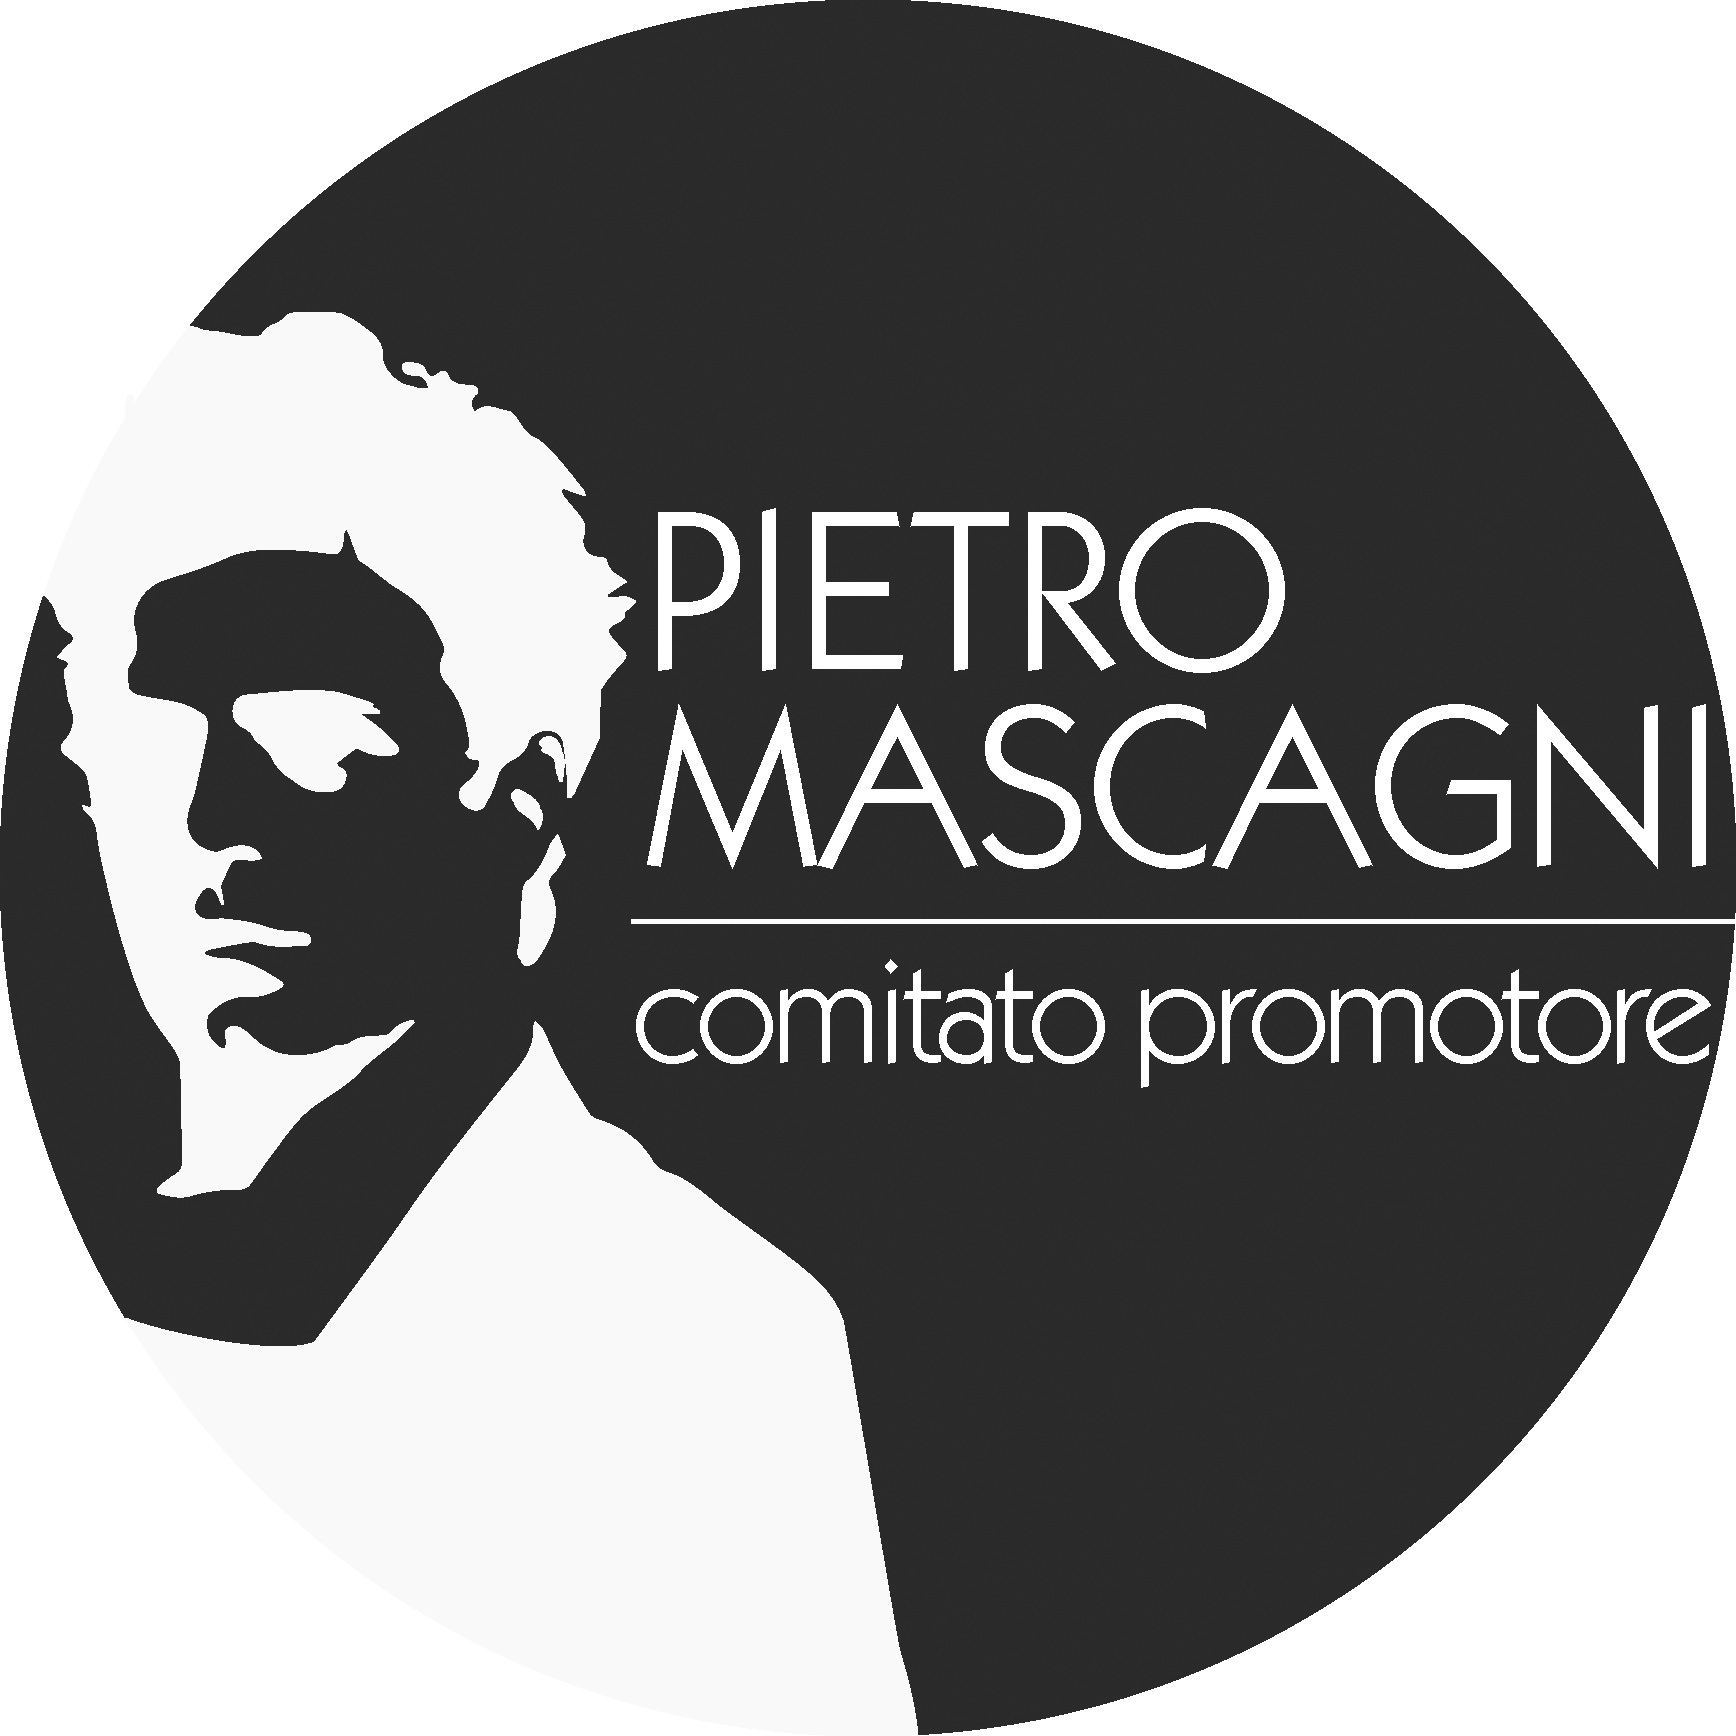 www.pietromascagni.com